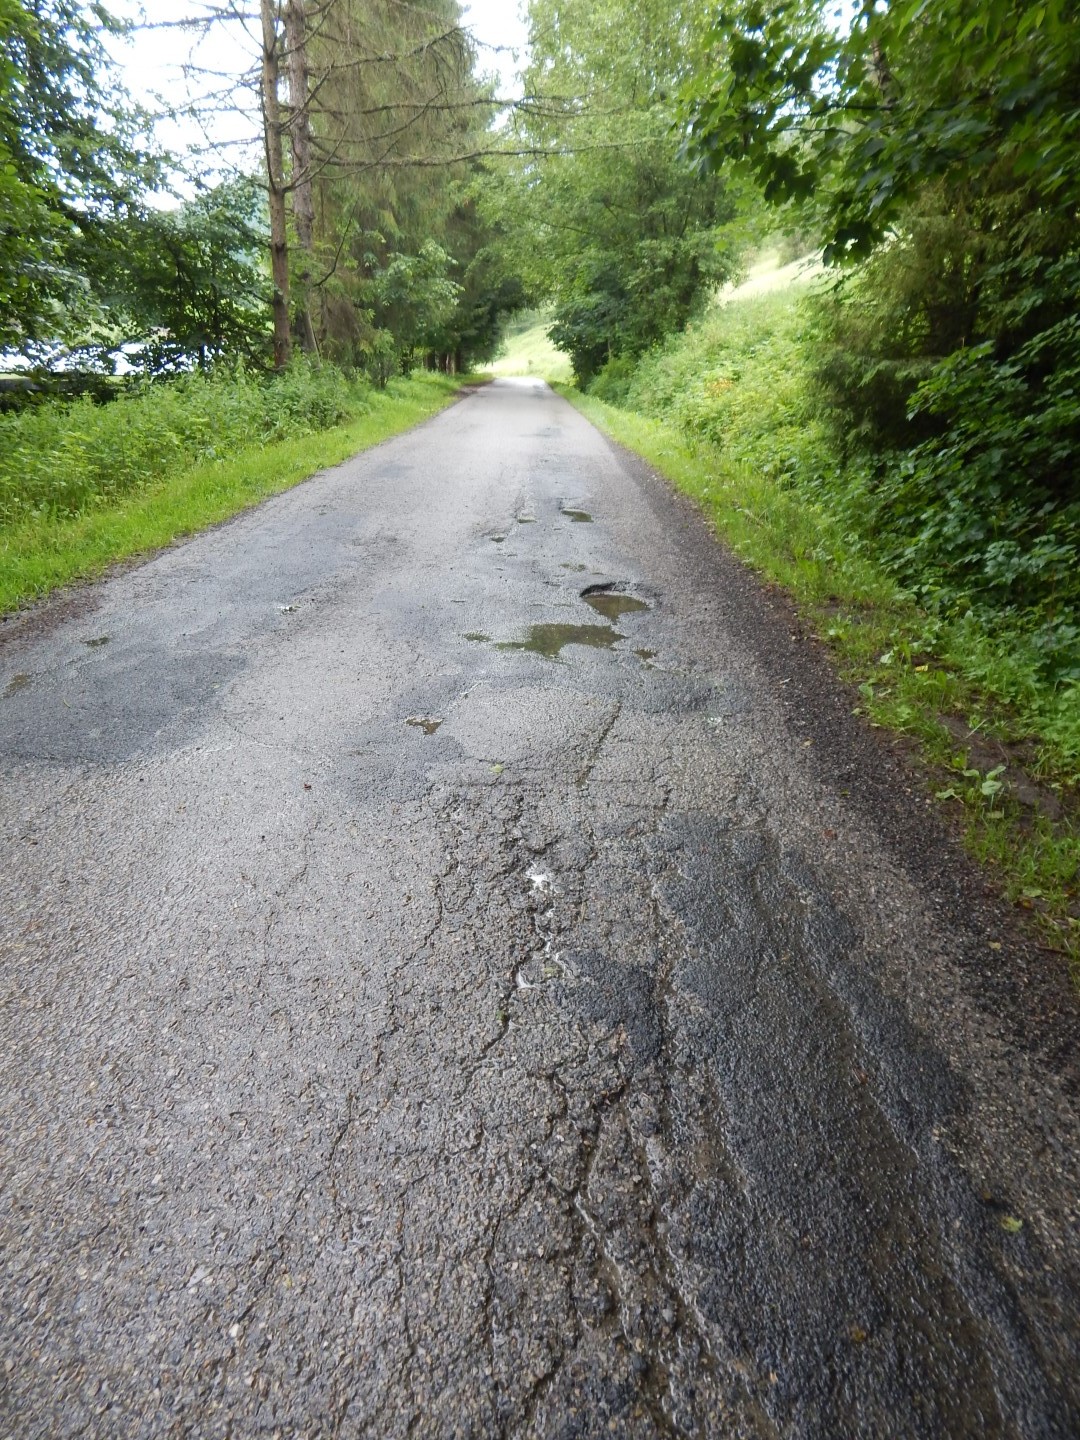 zdjęcie przedstawia asfaltową drogę. Po prawej stronie drogi znajdują się pęknięcia oraz dziury. W dziurach są kałuże. Drogę otaczają zielone drzewa i trawa.